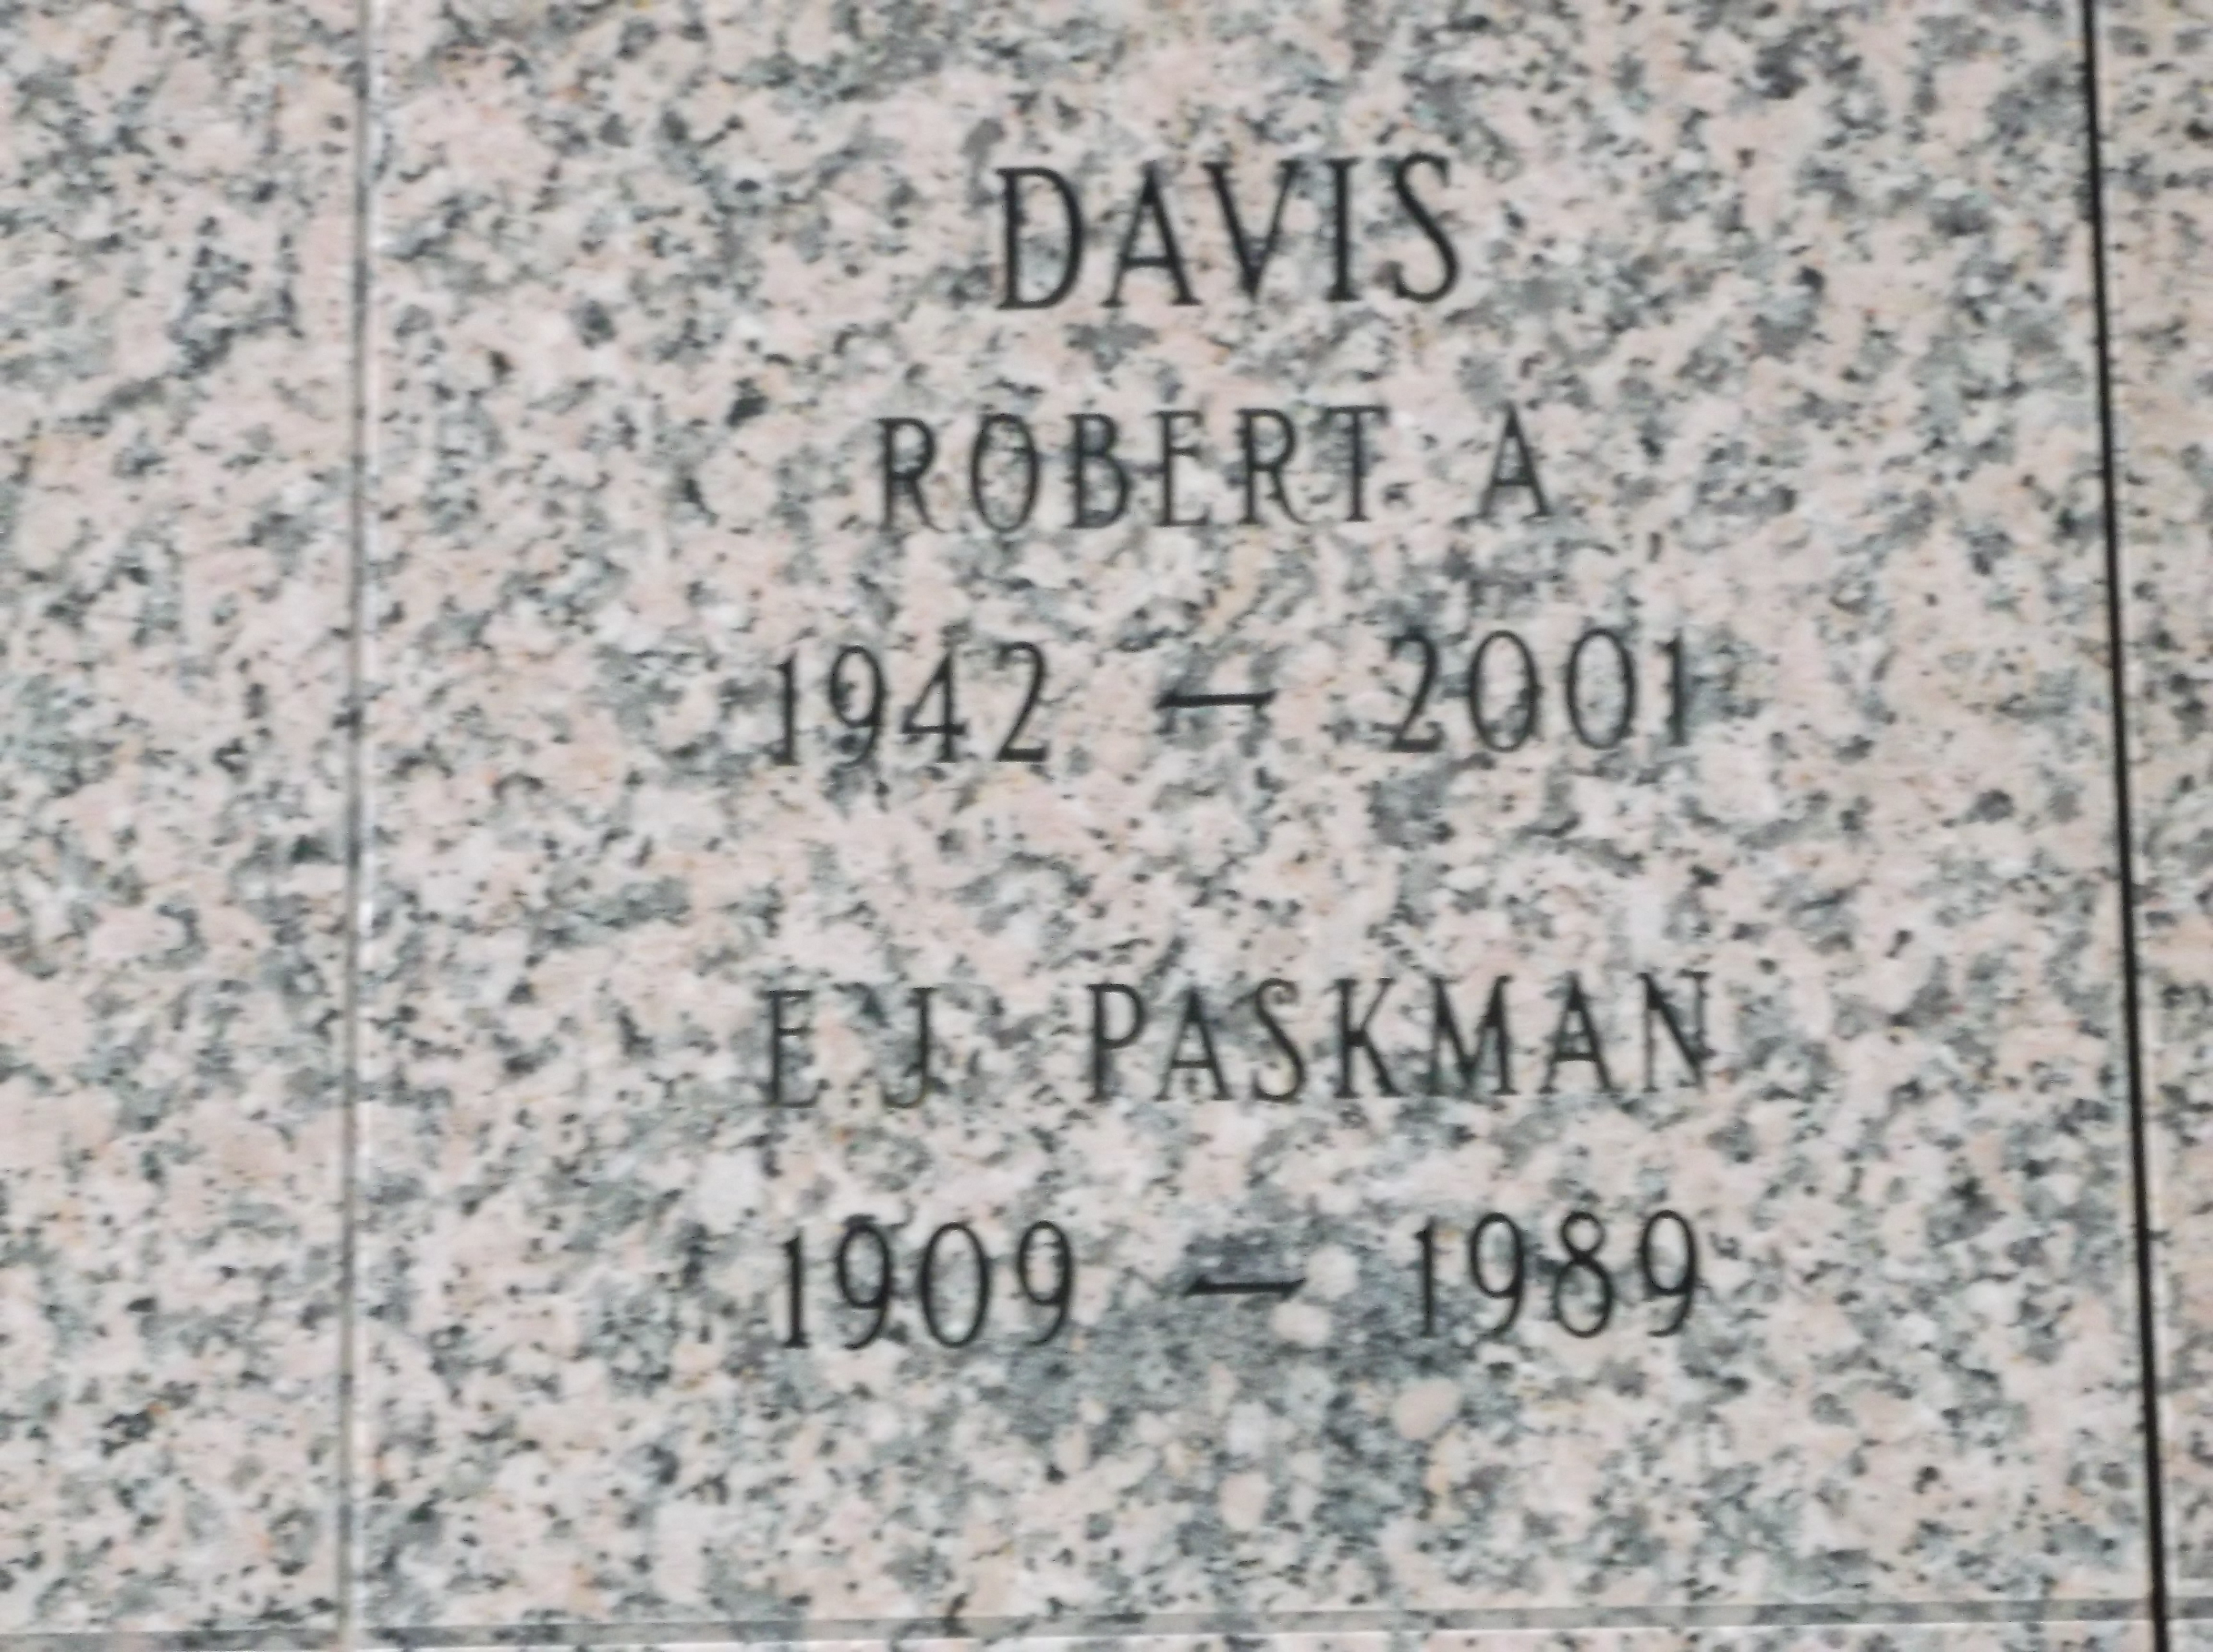 Robert A Davis